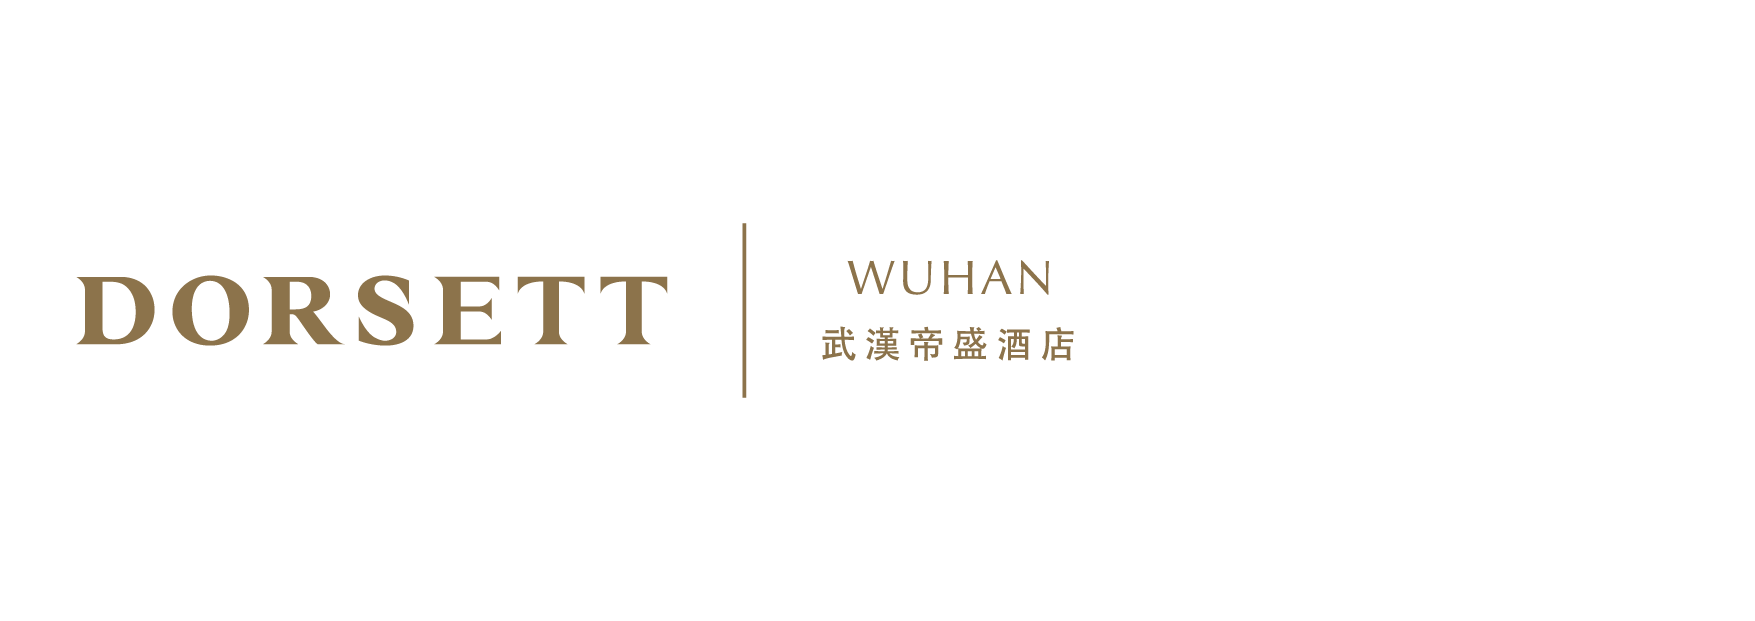 Dorsett Wuhan